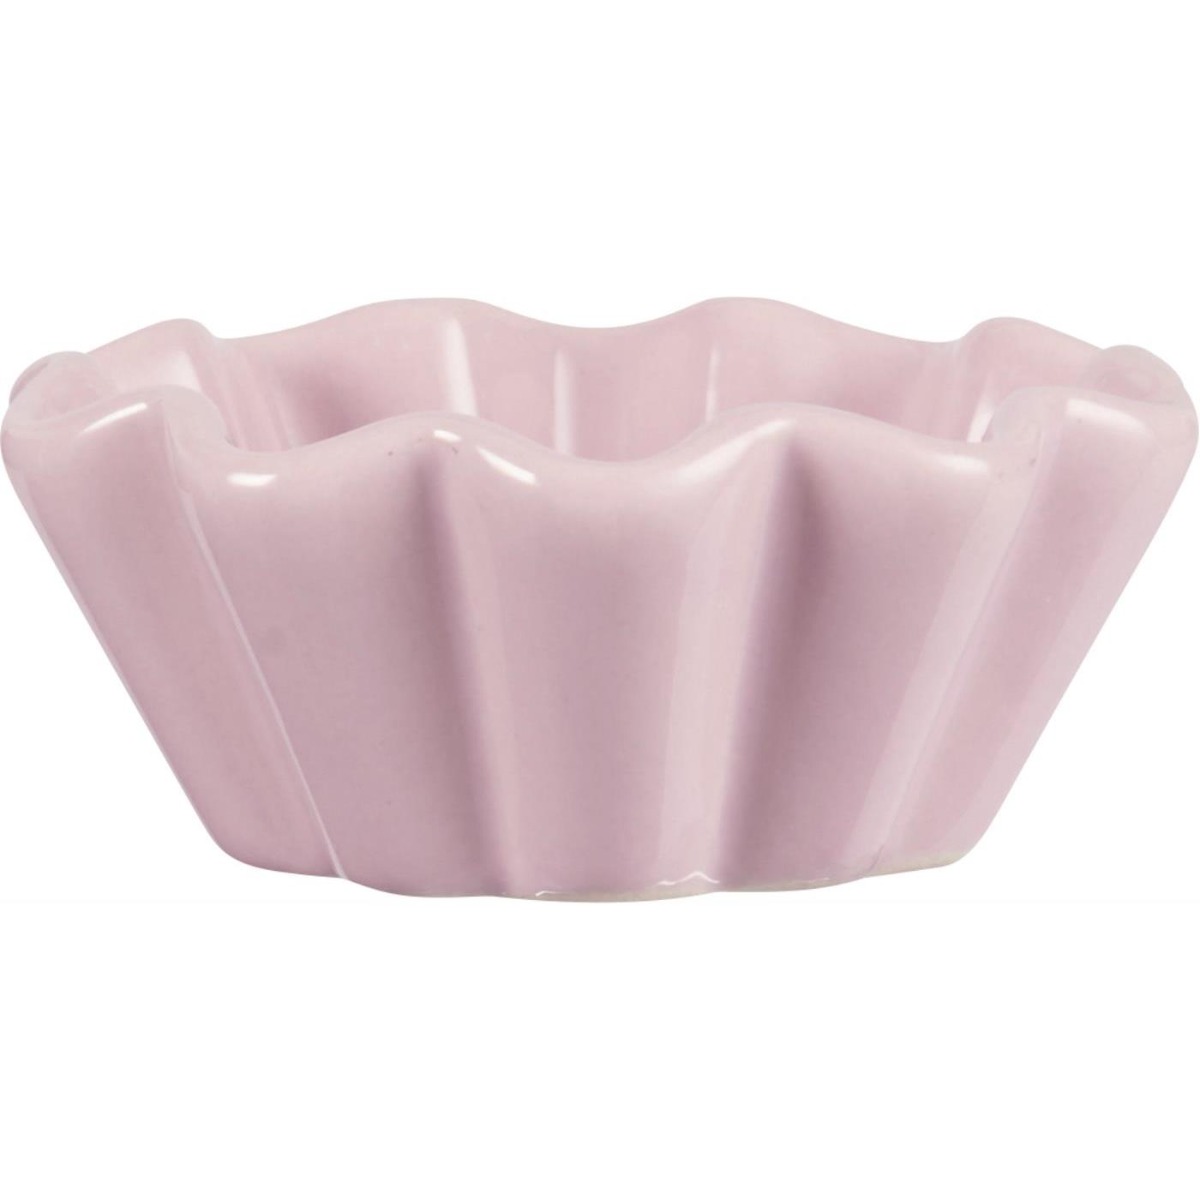 Cup cake bowl Mynte English Rose